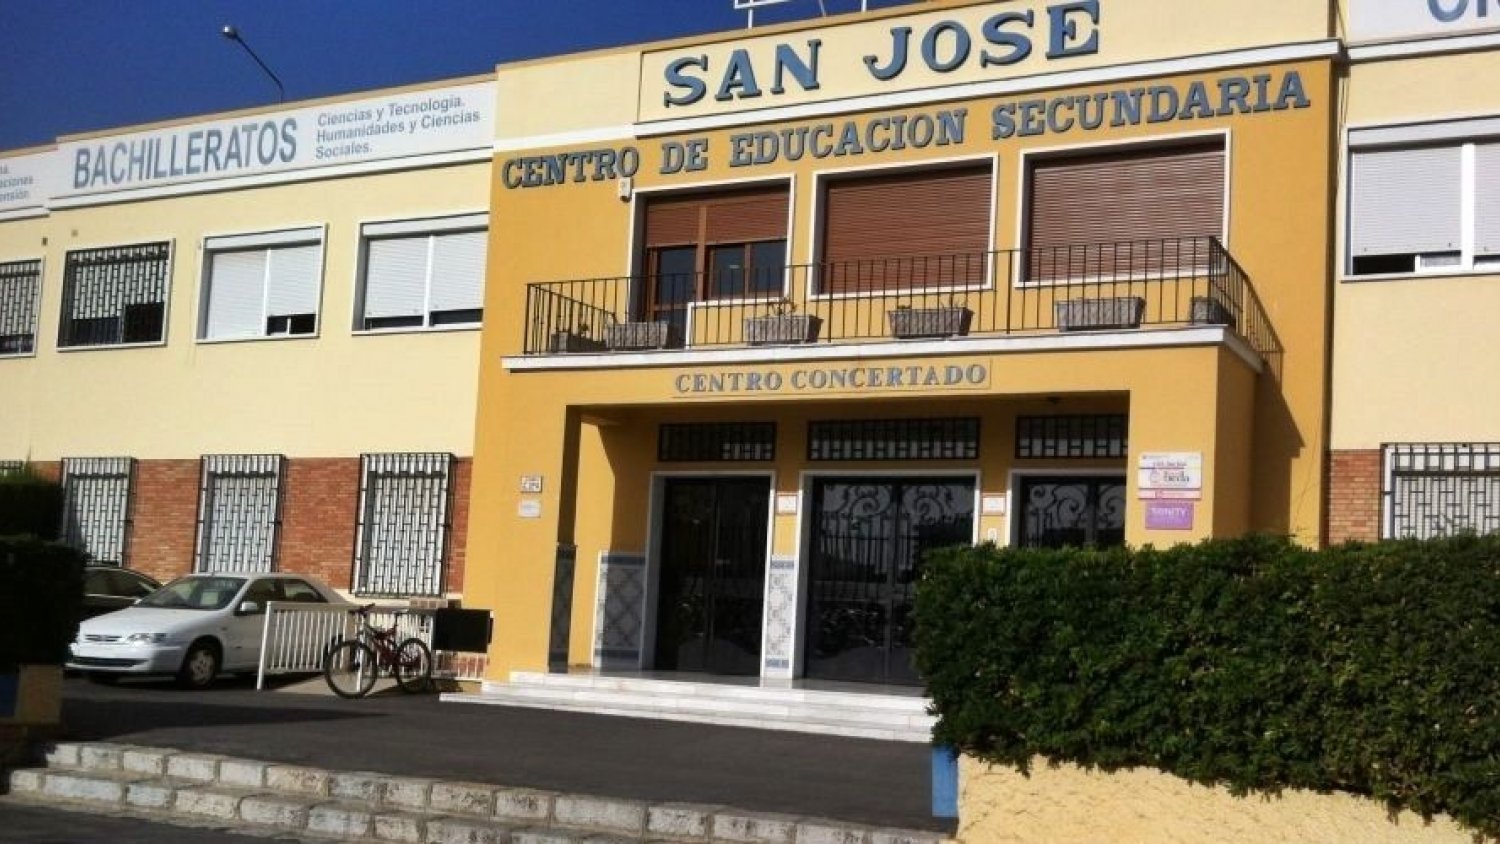 Habilitan 700 plazas de aparcamiento gratuito para sanitarios del Regional en el Colegio San José